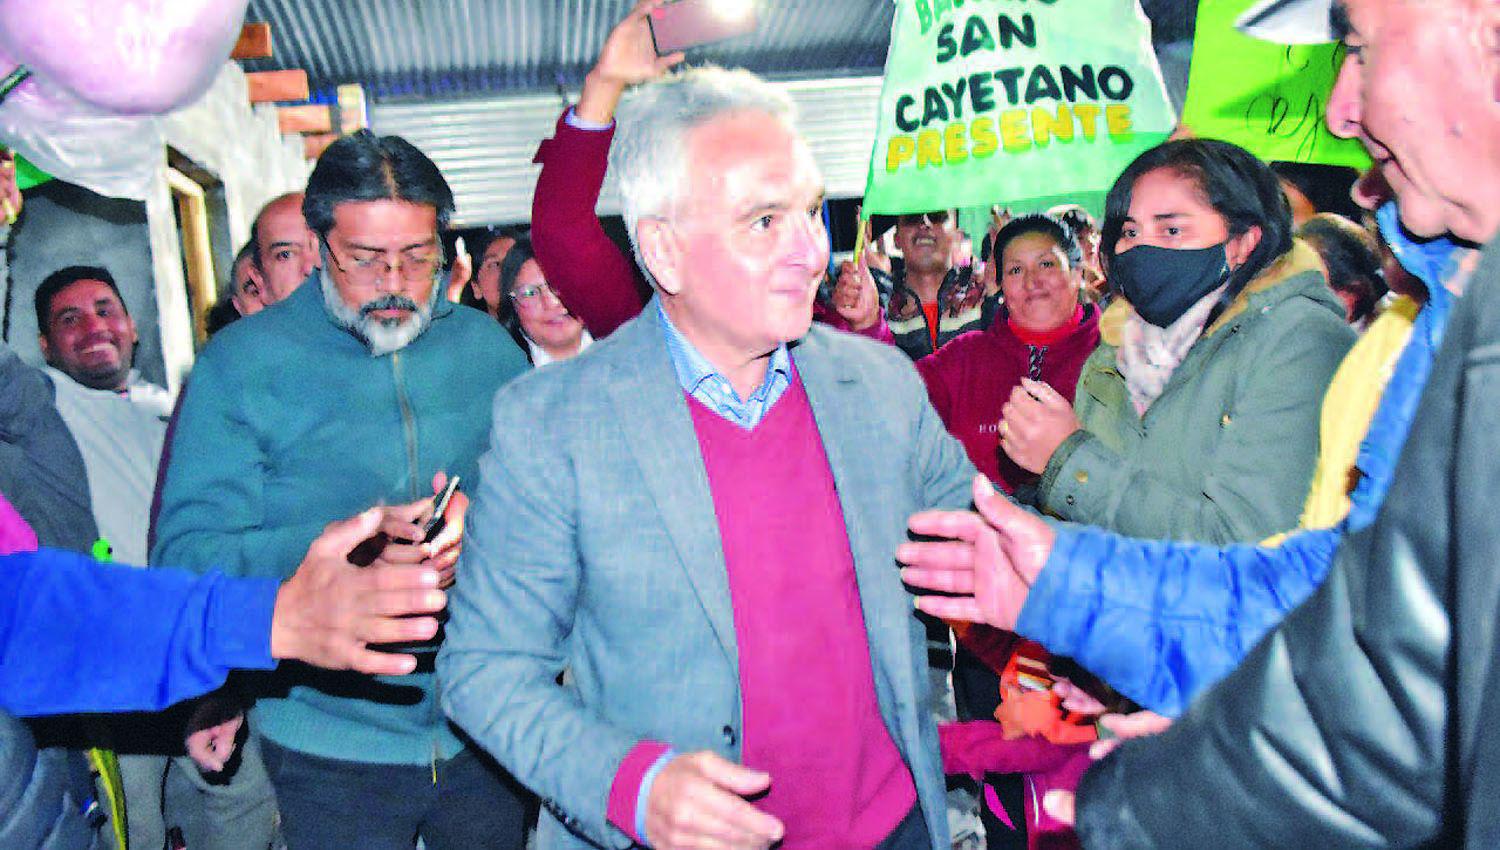 Heacutector Ibaacutentildeez dio a conocer la lista de candidatos a concejales de su partido